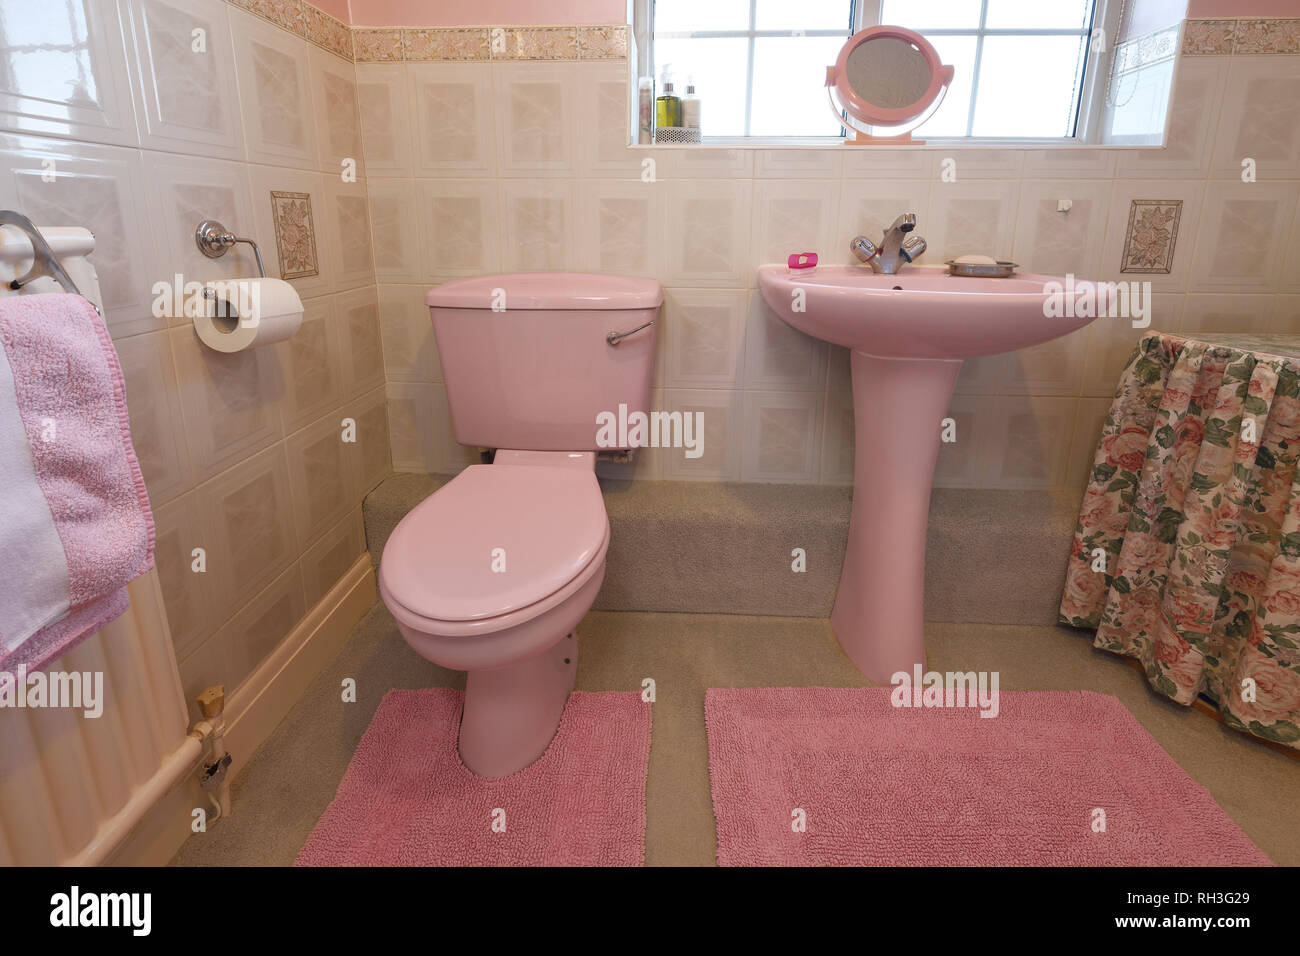 Une ancienne salle de bains de couleur rose pâle Banque D'Images